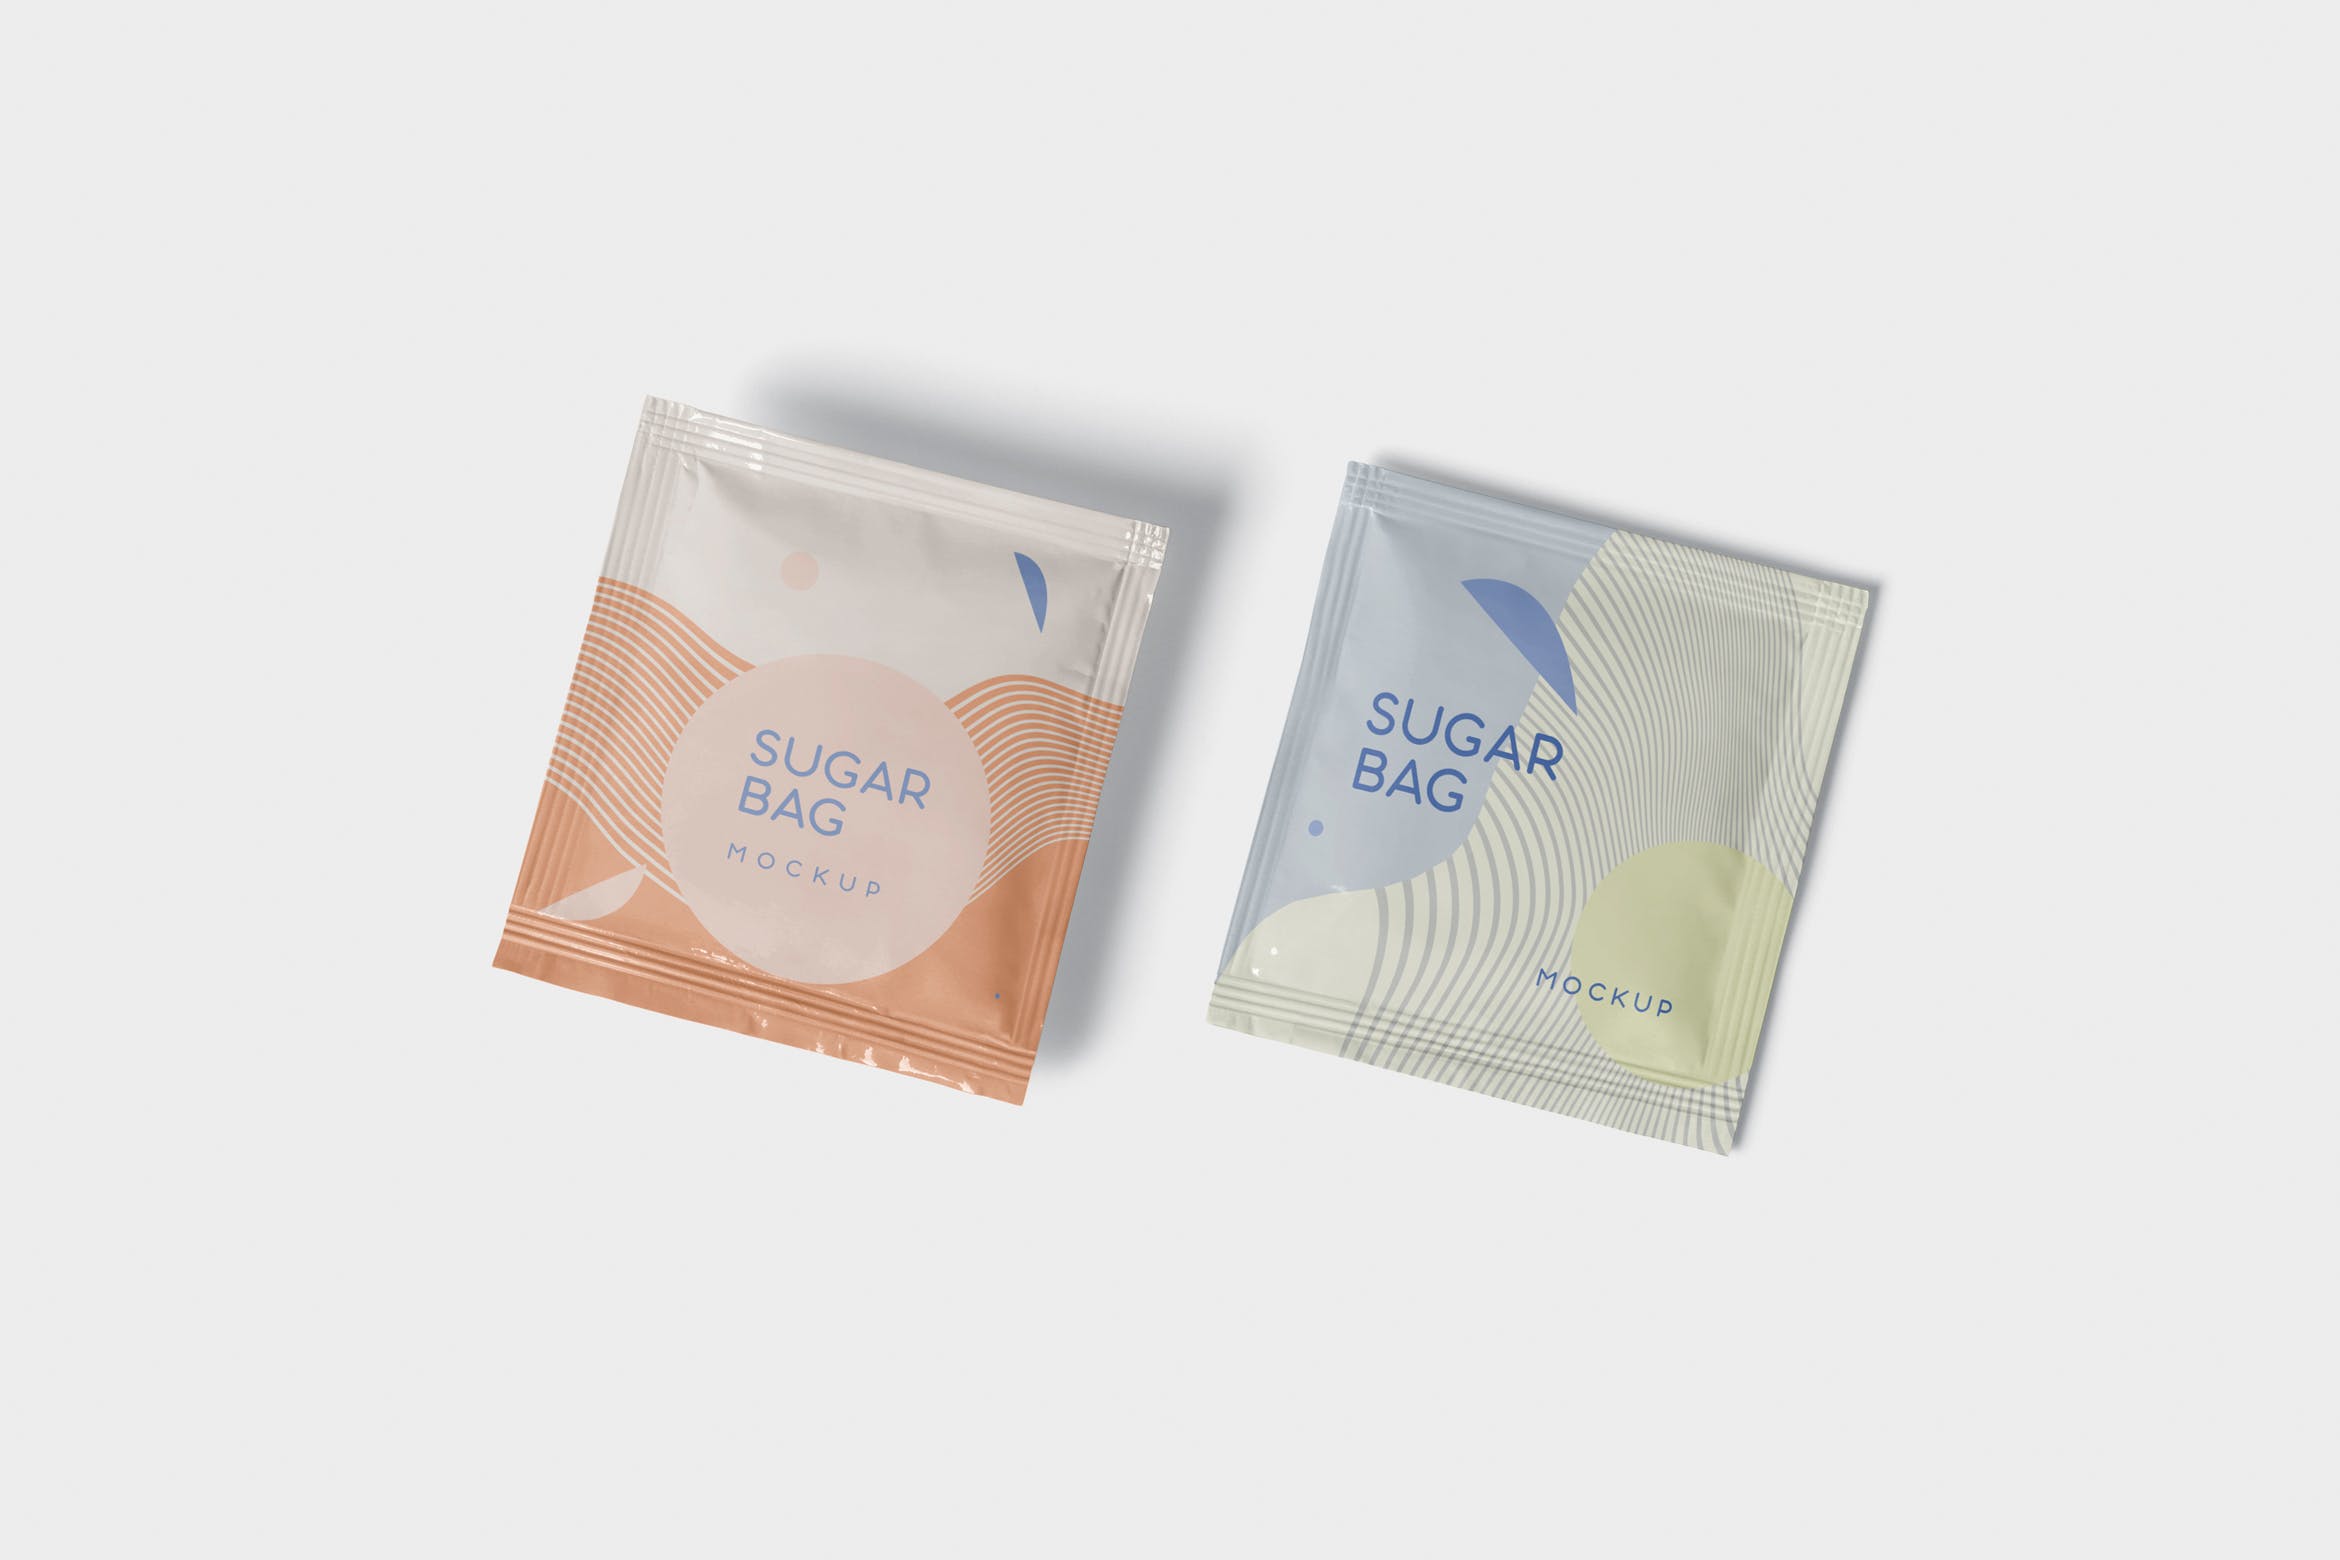 盐袋糖袋包装设计效果图样机 Salt OR Sugar Bag Mockup – Square Shaped设计素材模板